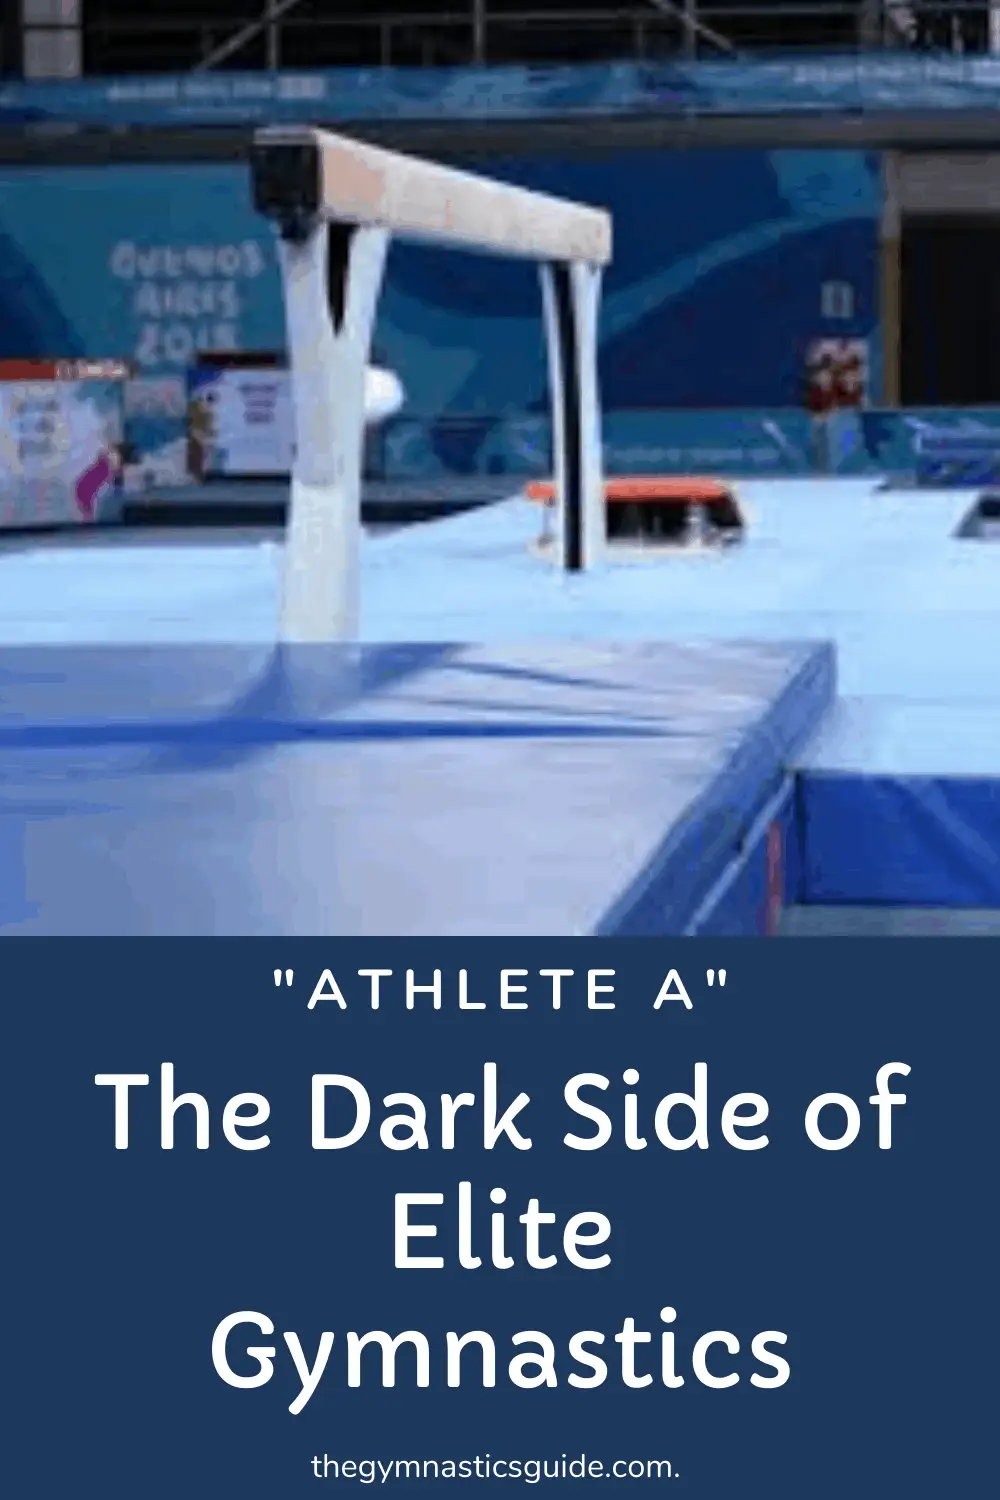 Athlete A: The Dark Side of Elite Gymnastics